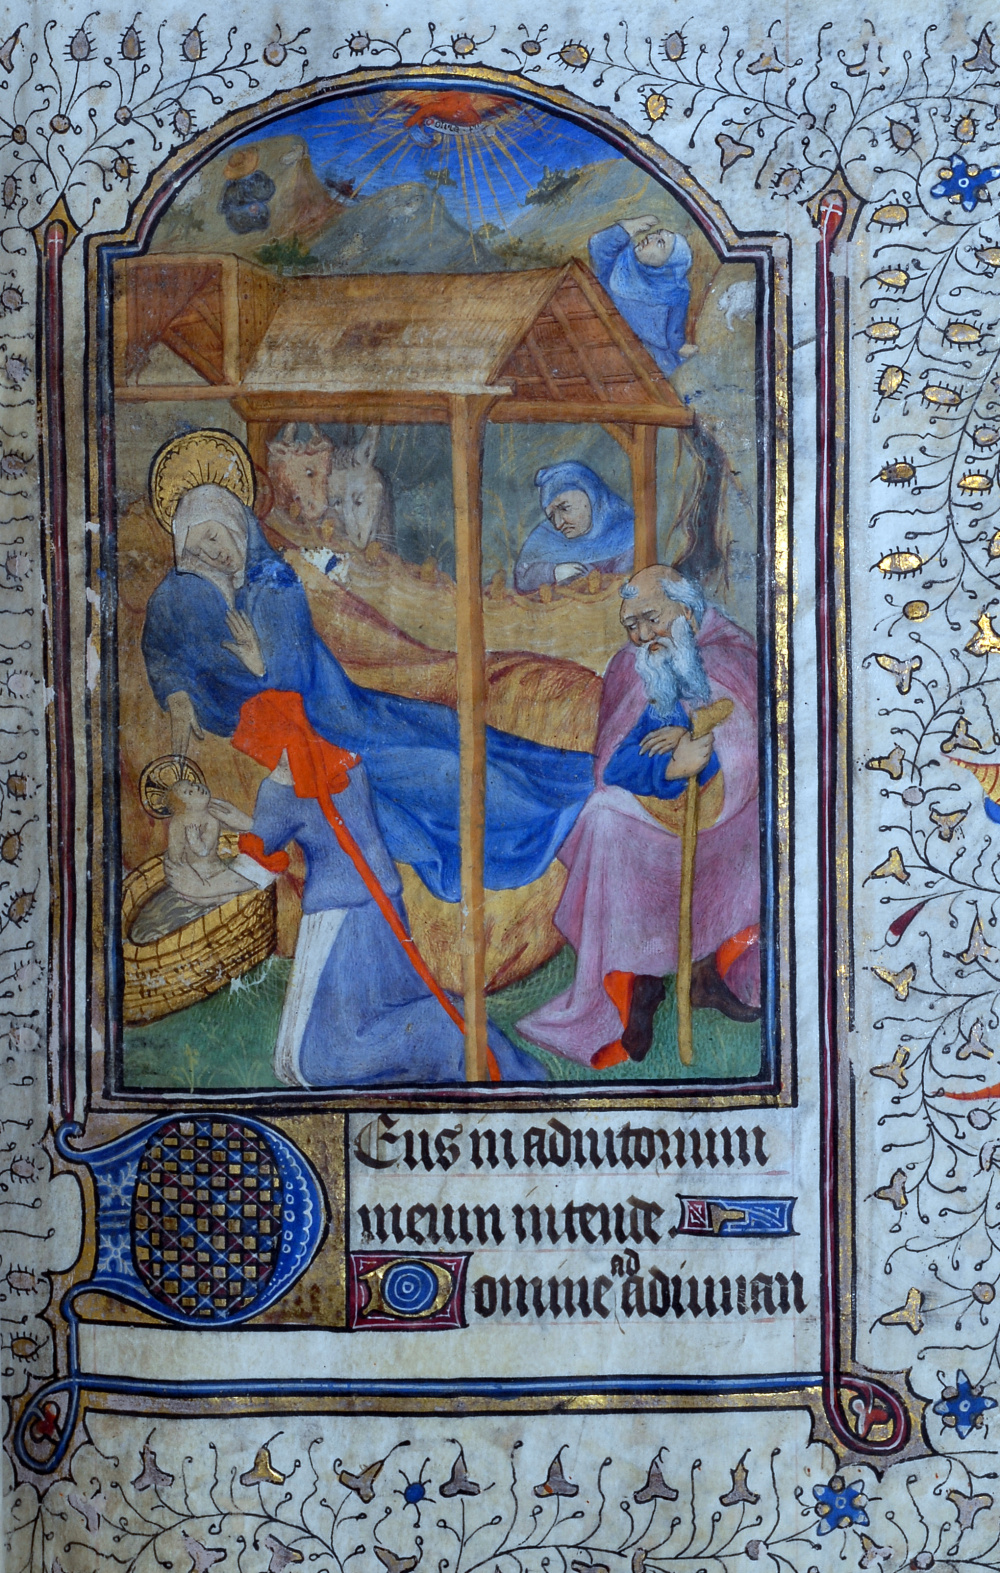 Heures à l'usage de Rome (15e siècle) : Nativité. © Bibliothèque publique et universitaire de Valence.